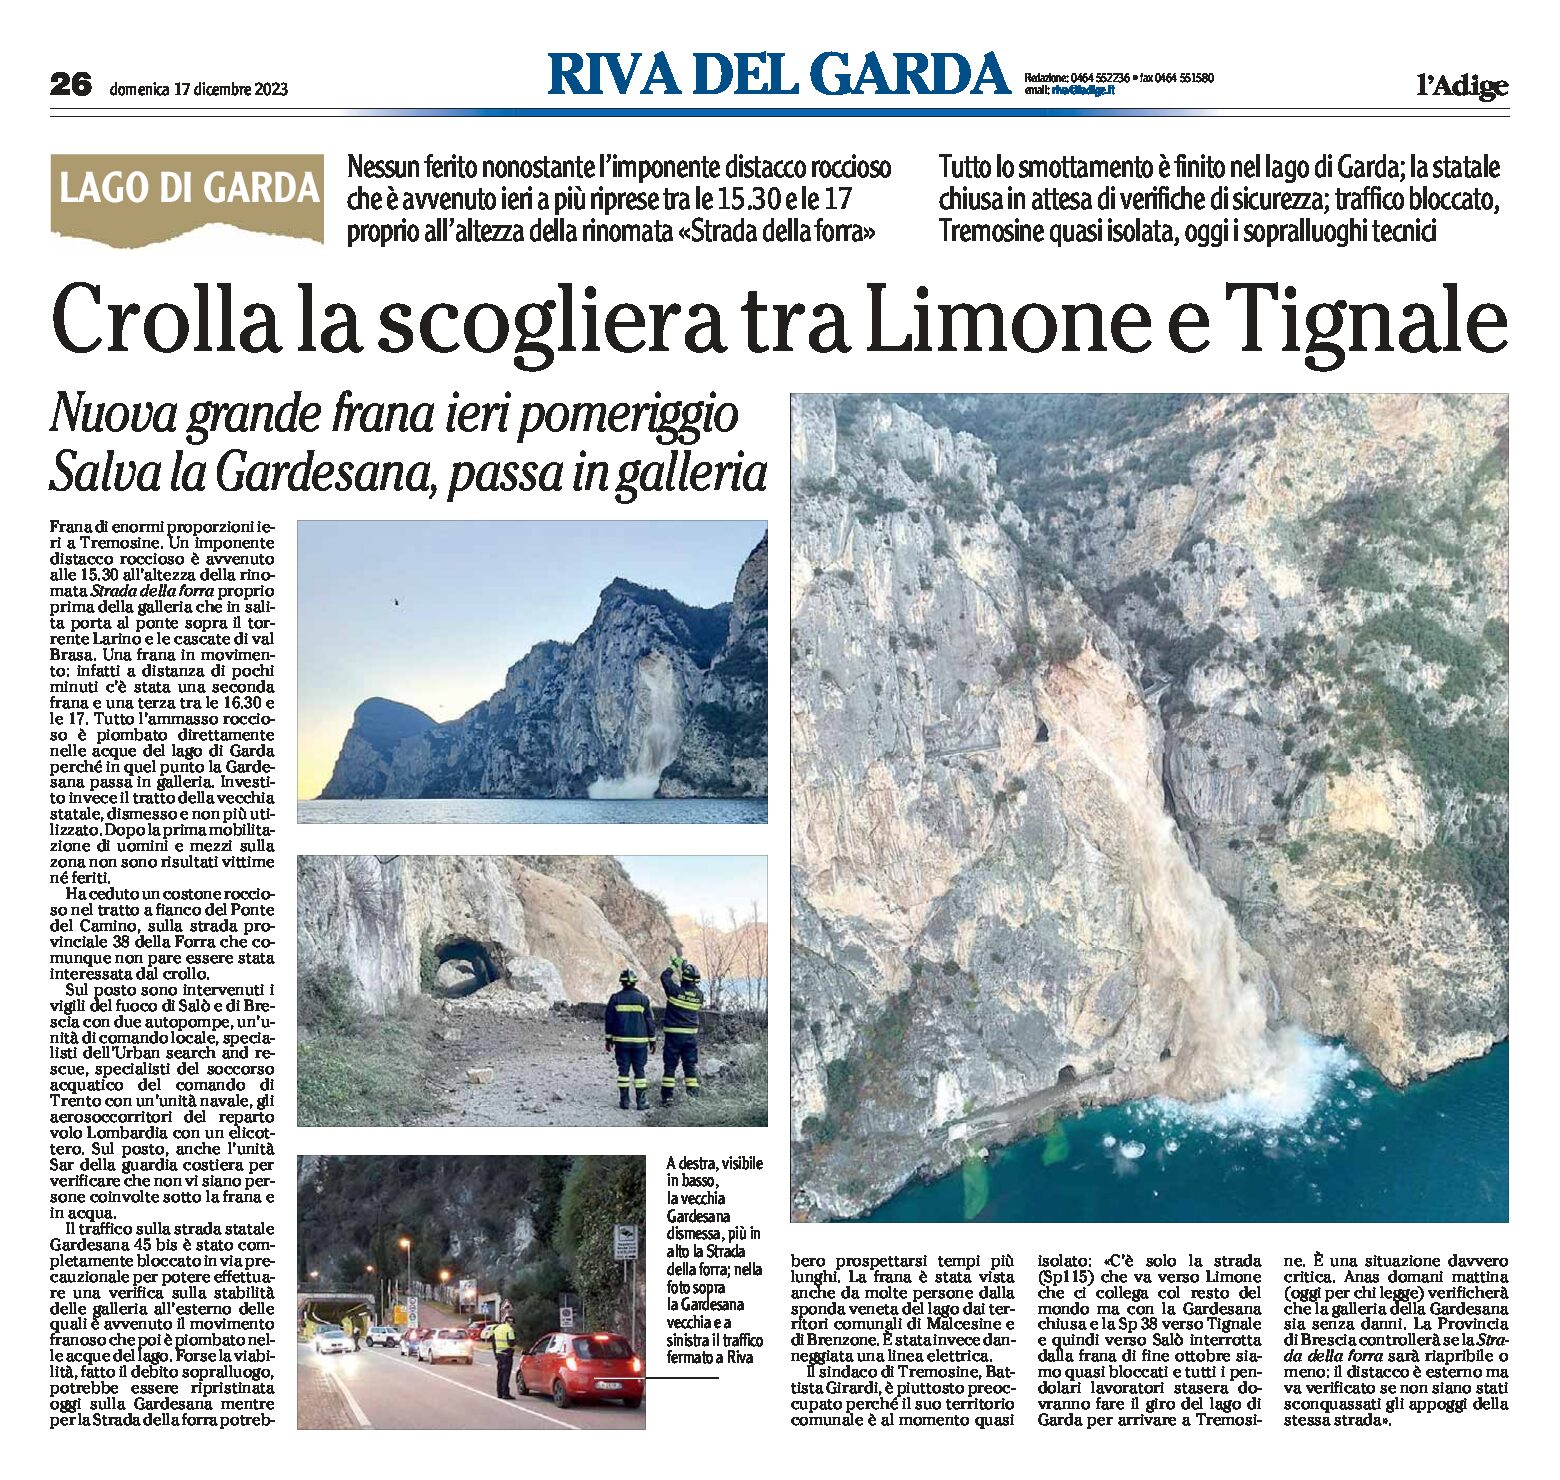 Lago di Garda: crolla la scogliera tra Limone e Tignale